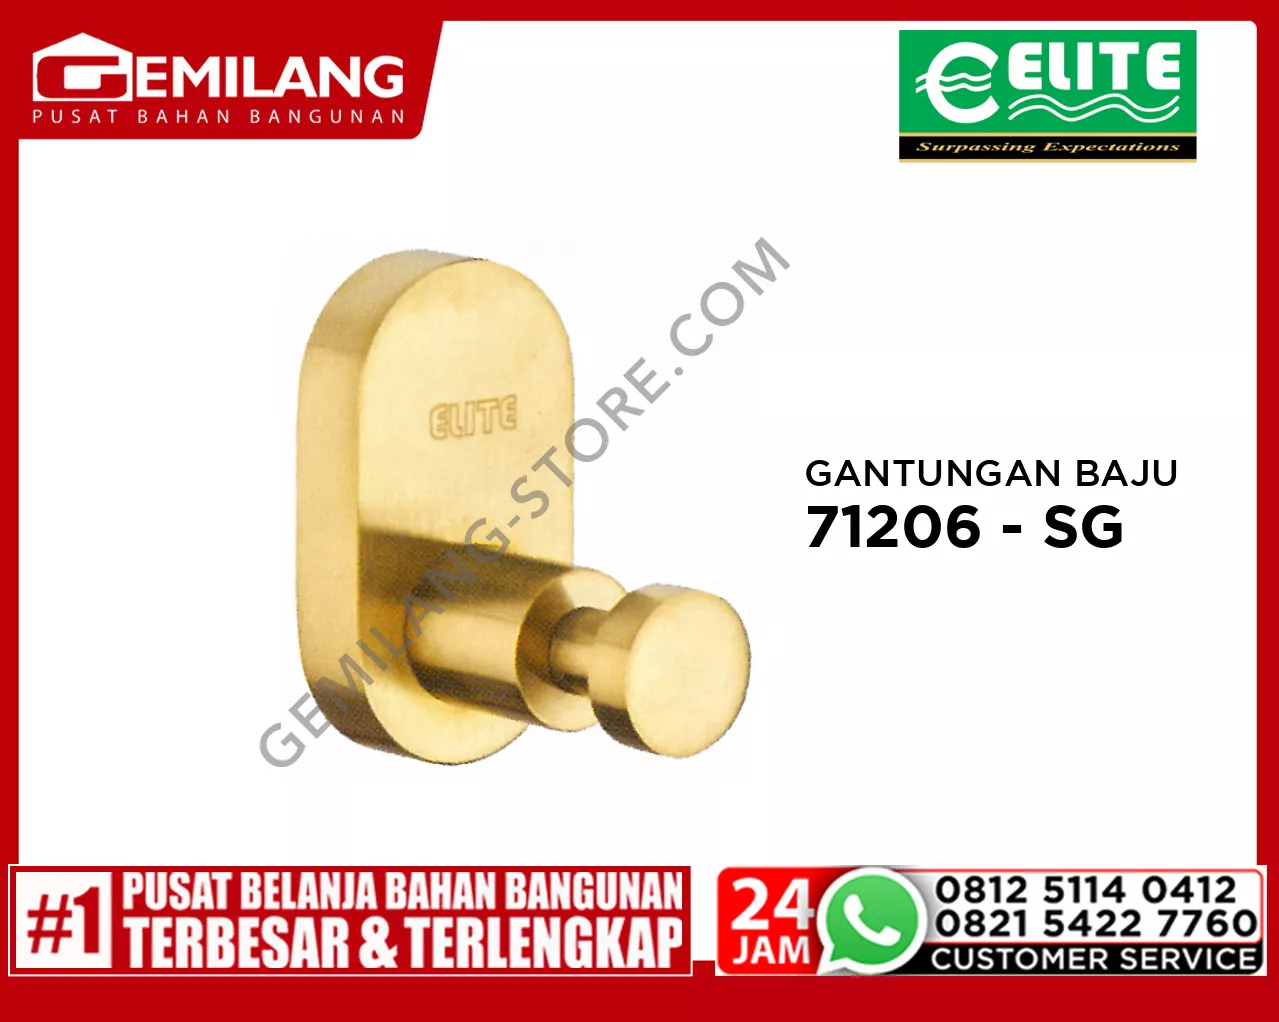 ELITE GANTUNGAN BAJU STAINLESS SATIN GOLD E - 71206 - SG